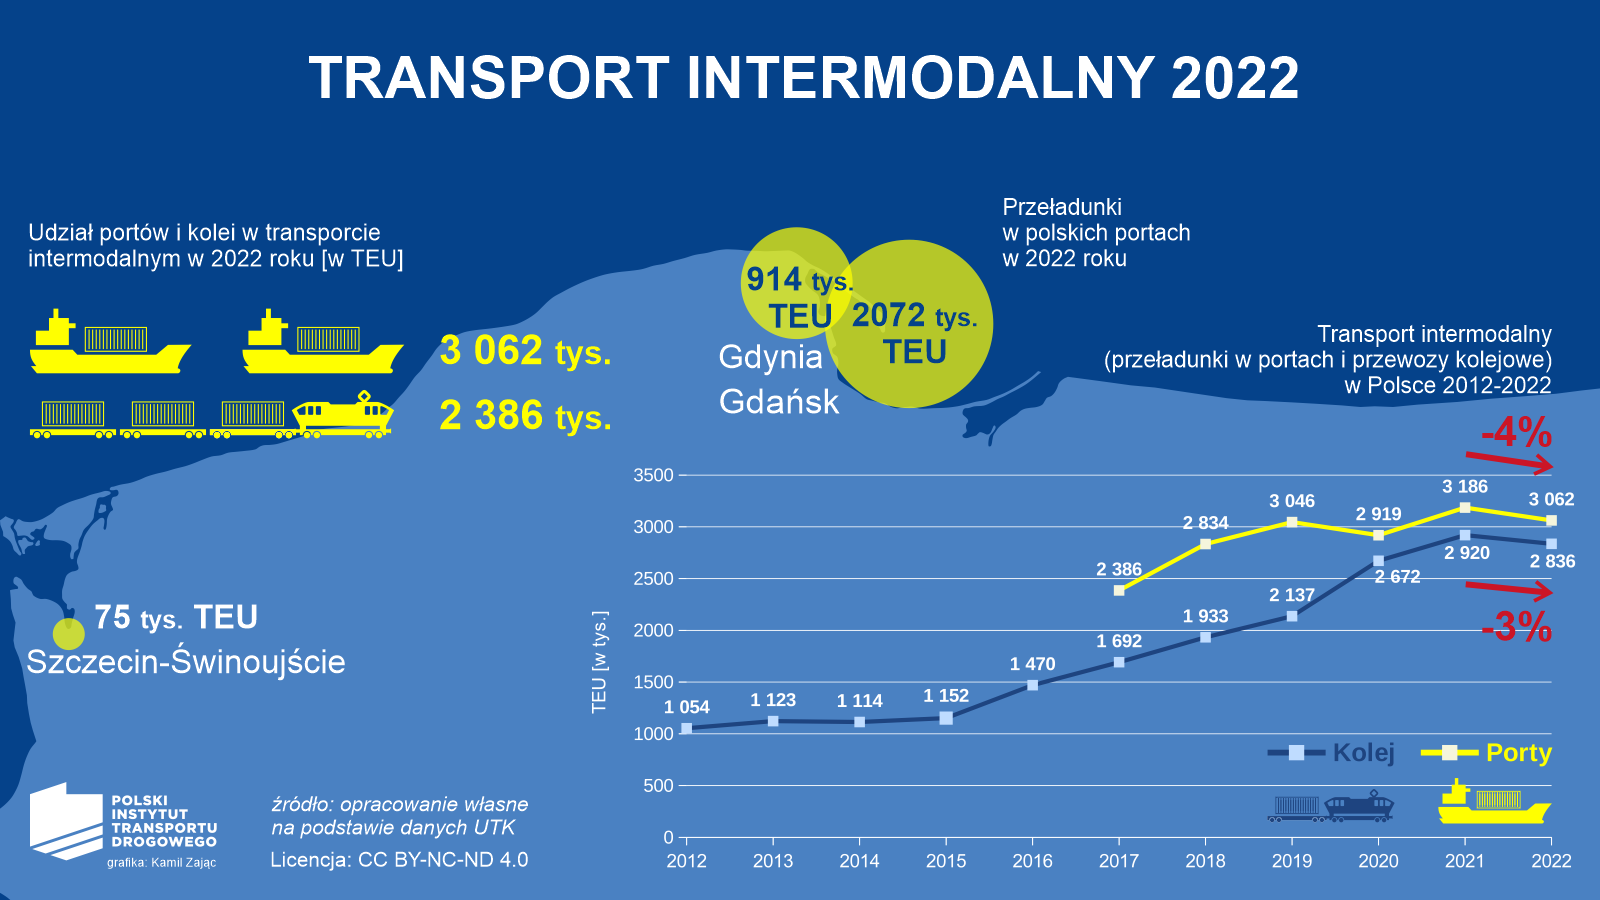 Transport intermodalny w 2022 roku - przeładunki w portach i przewozy kolejowe